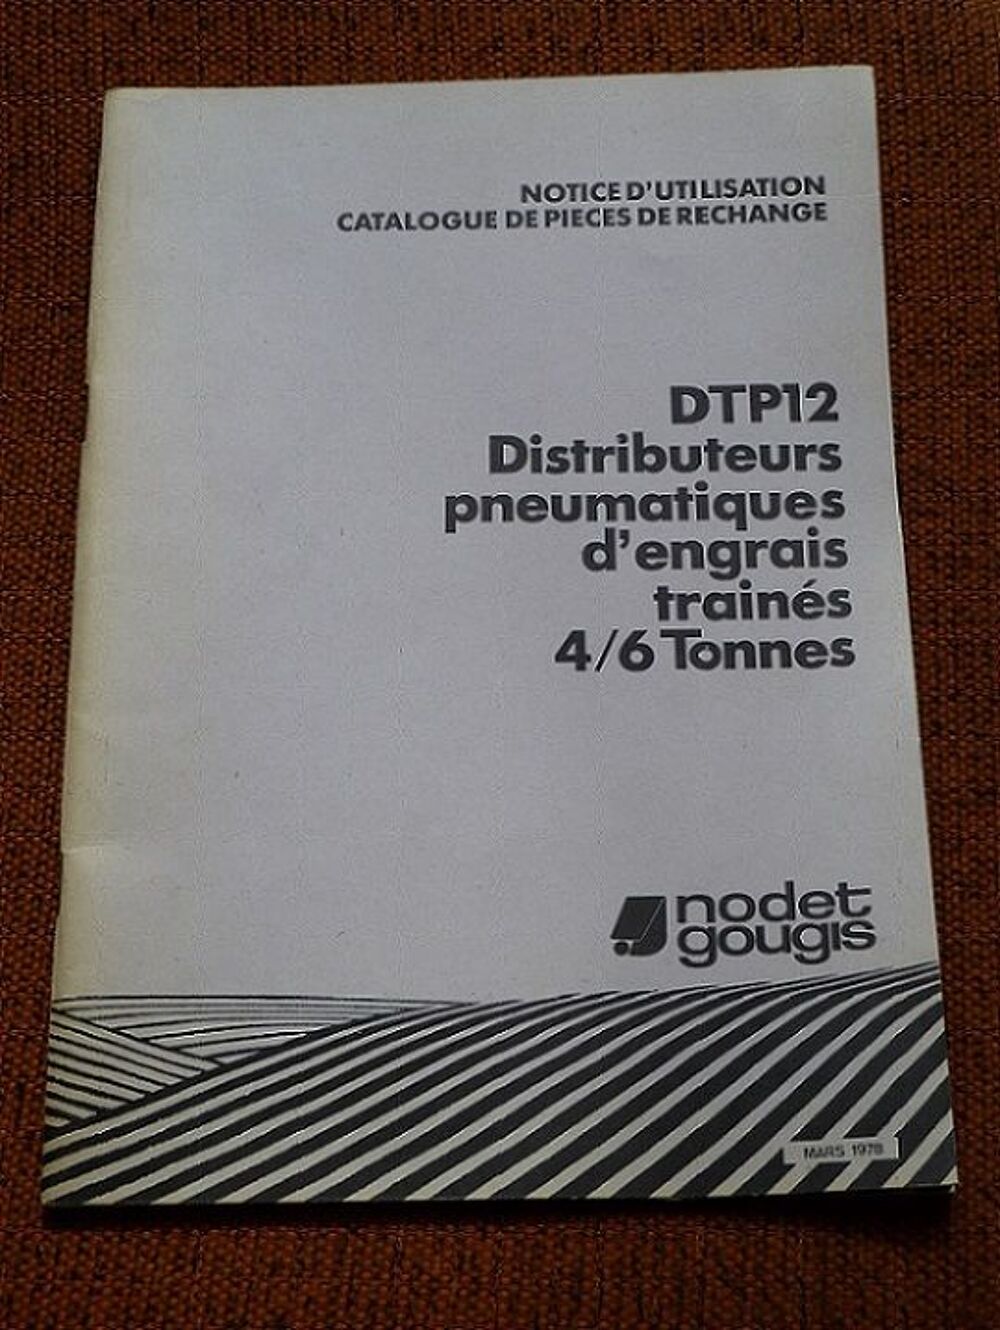   Notice d'utilisation  distributeur d'engrais NODET DTP 12 